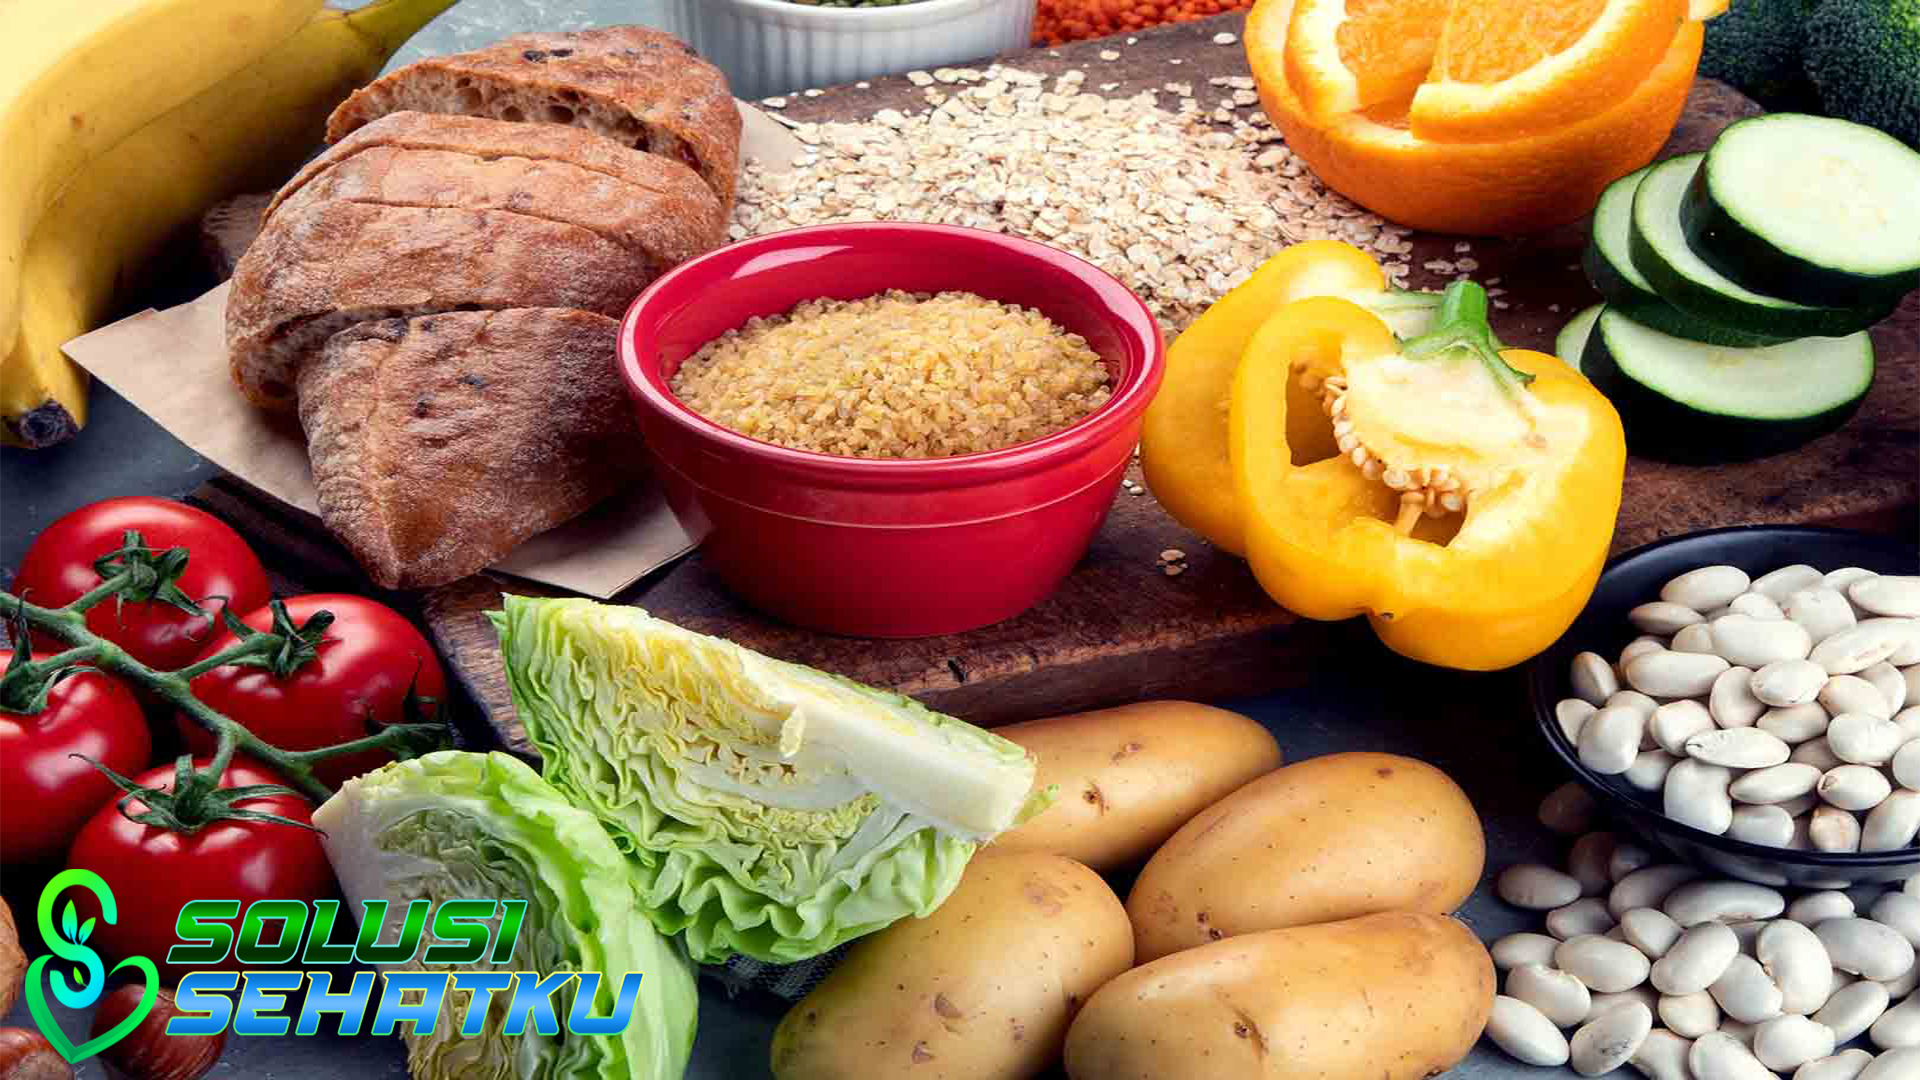 Makanan Berserat Sehari-hari & Manfaatnya bagi Kesehatan tubuh